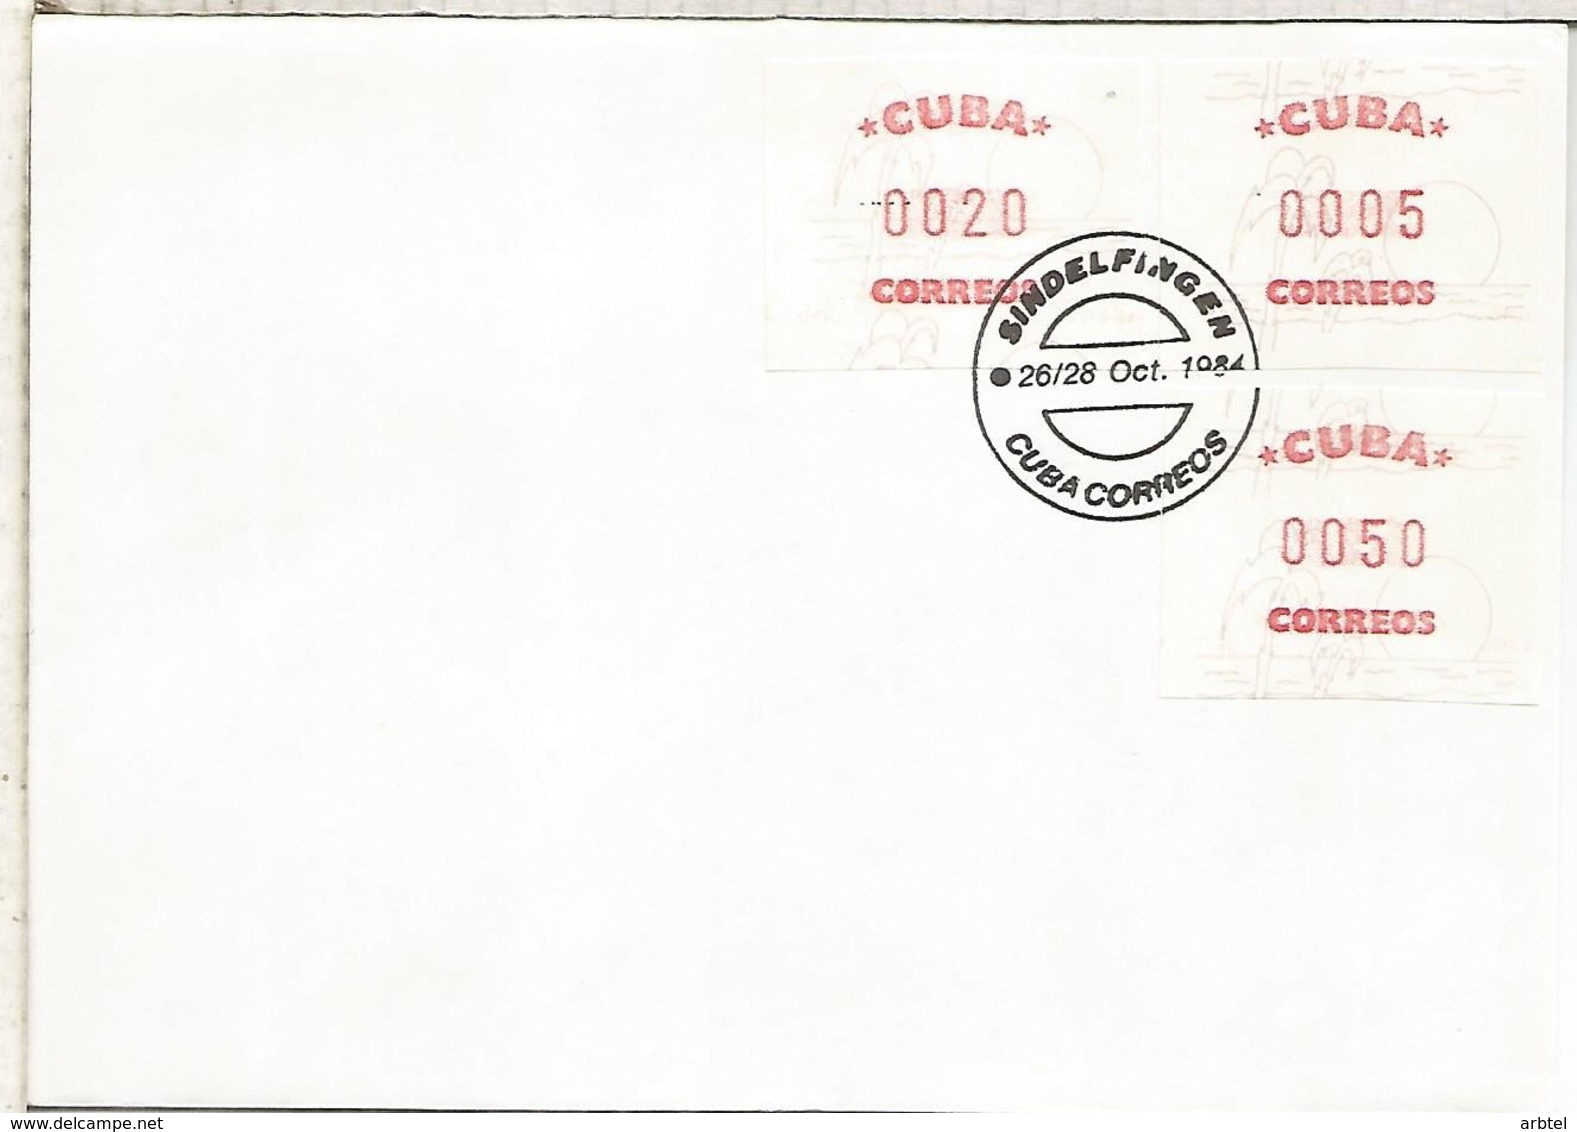 CUBA FDC ATM 1984 BRIEFMARKEN MESSE SINDELFINGEN - Briefe U. Dokumente